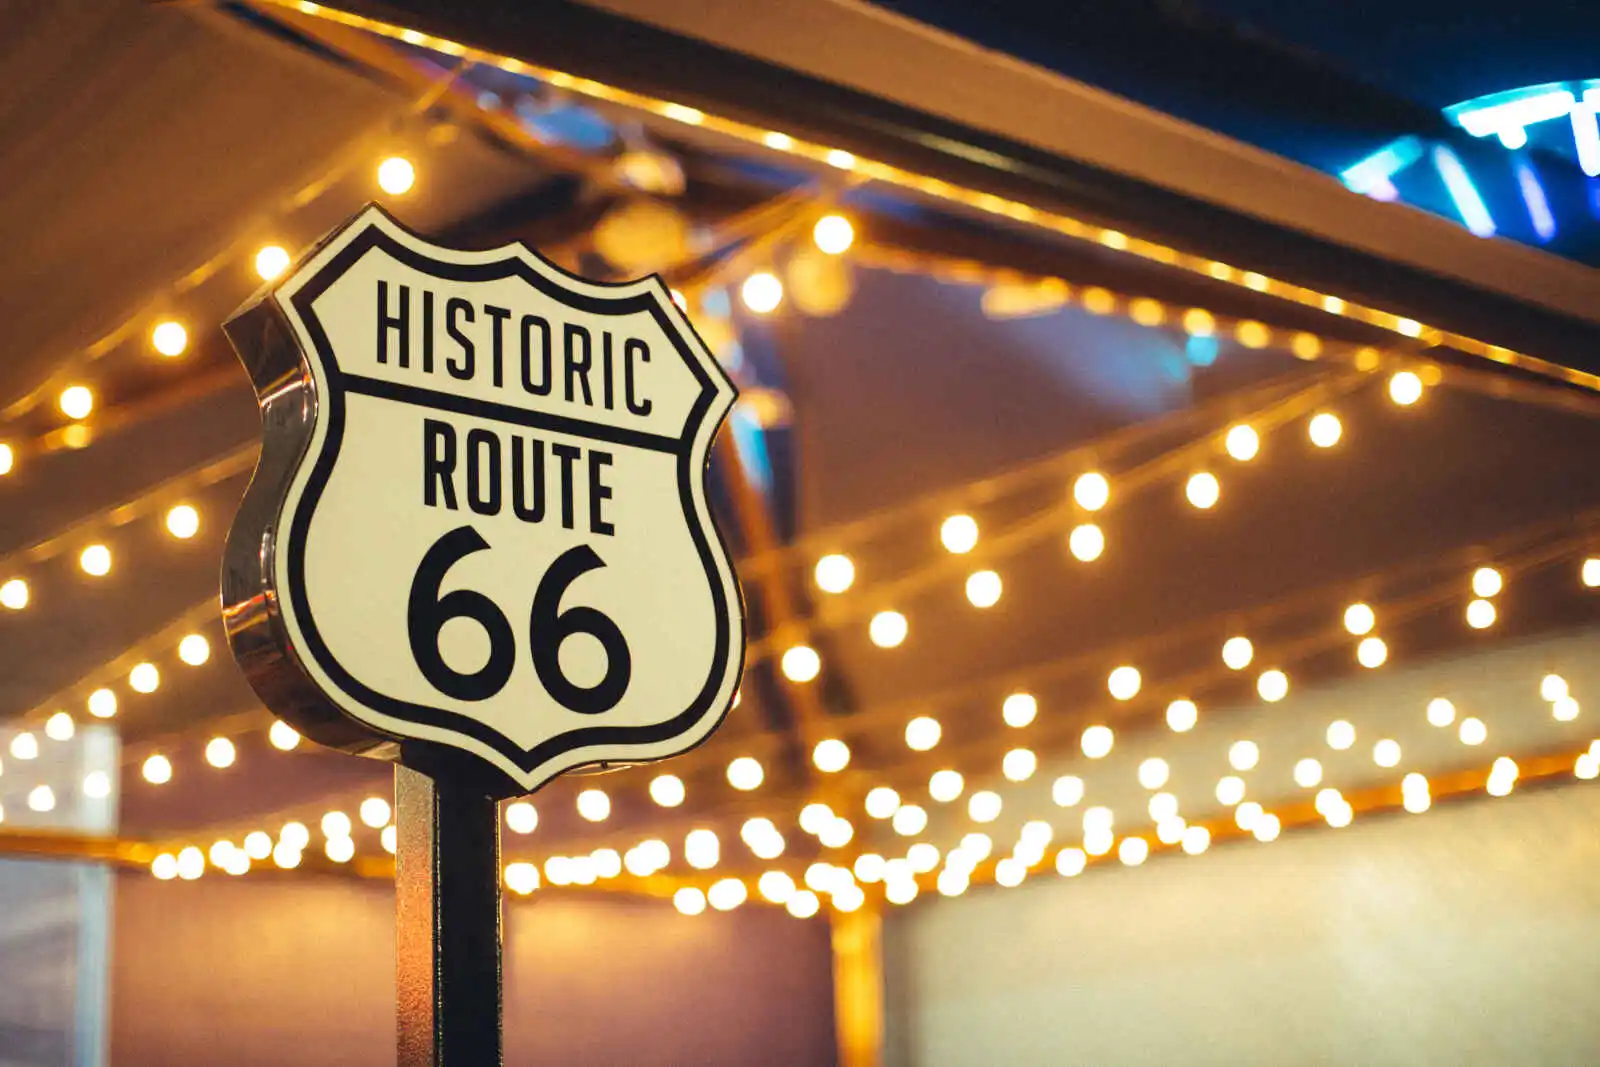 Panneau Historic Route 66,Californie, États-Unis